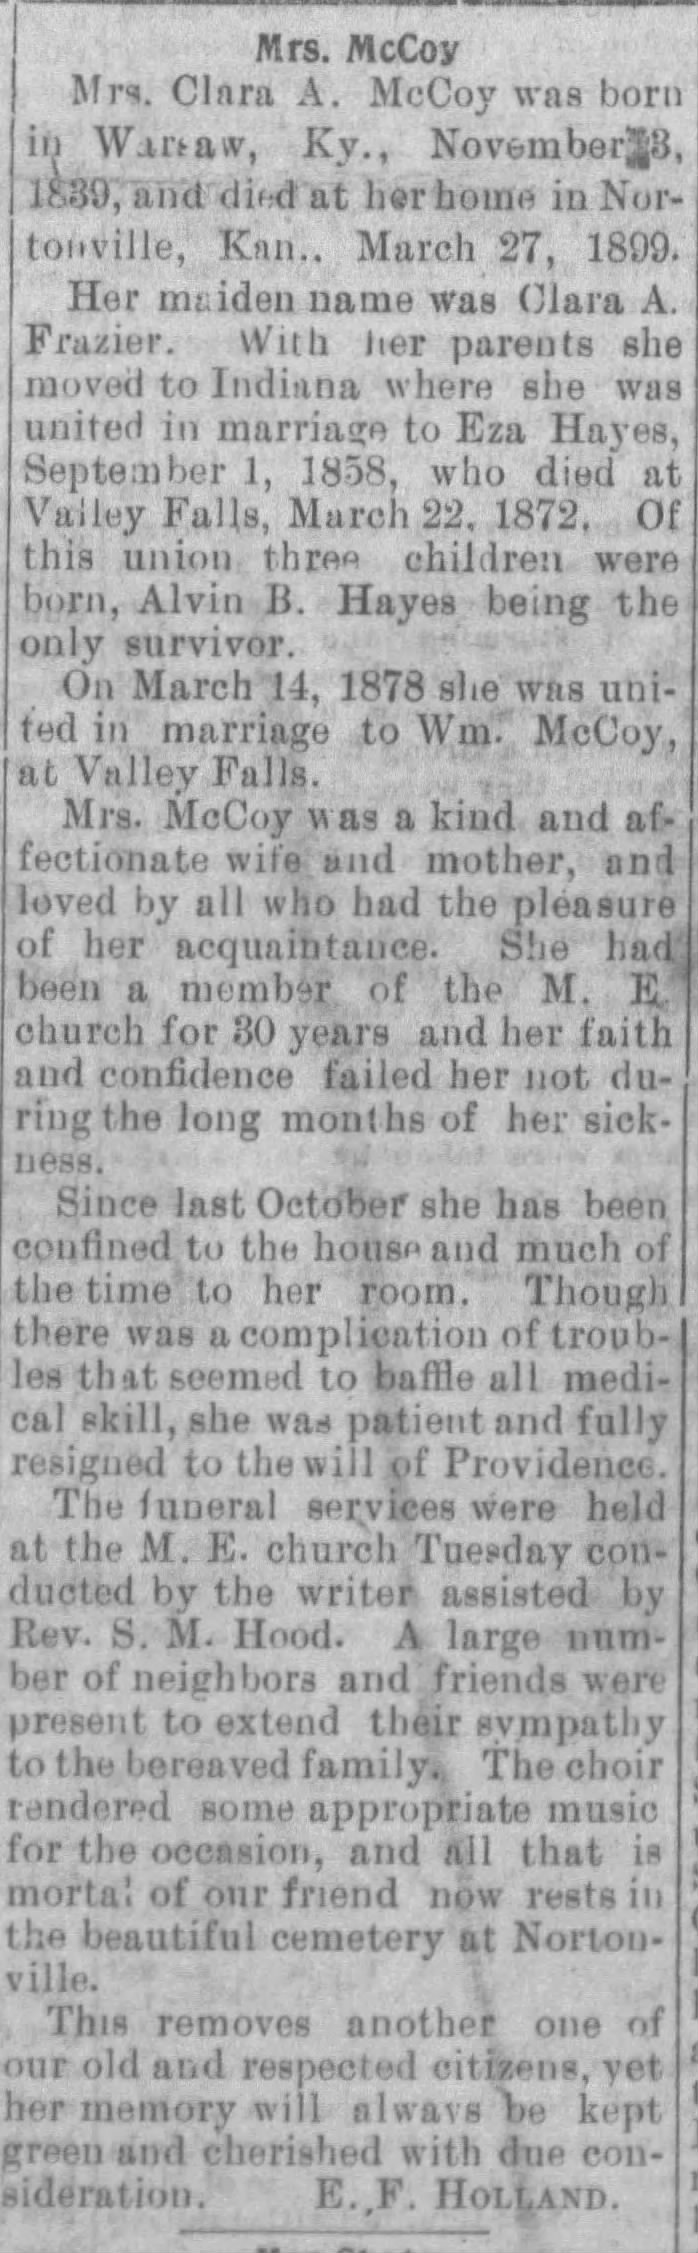 Obituary: Clara A. McCoy nee Frazier (Nov. 3, 1839 - Mar 27, 1899)